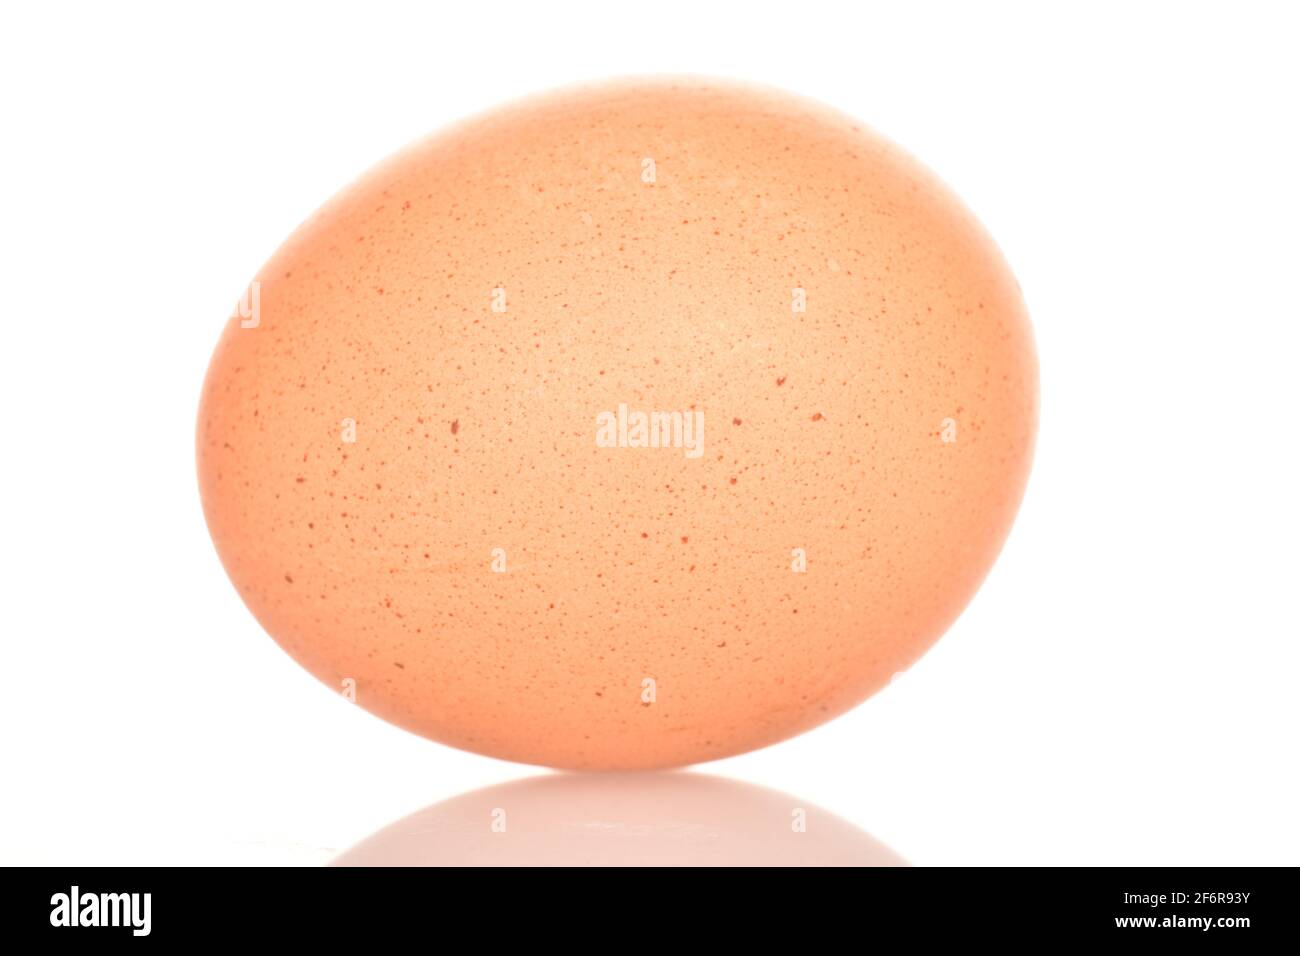 Un uovo di pollo ovale fresco e biologico beige, su sfondo bianco. Foto Stock